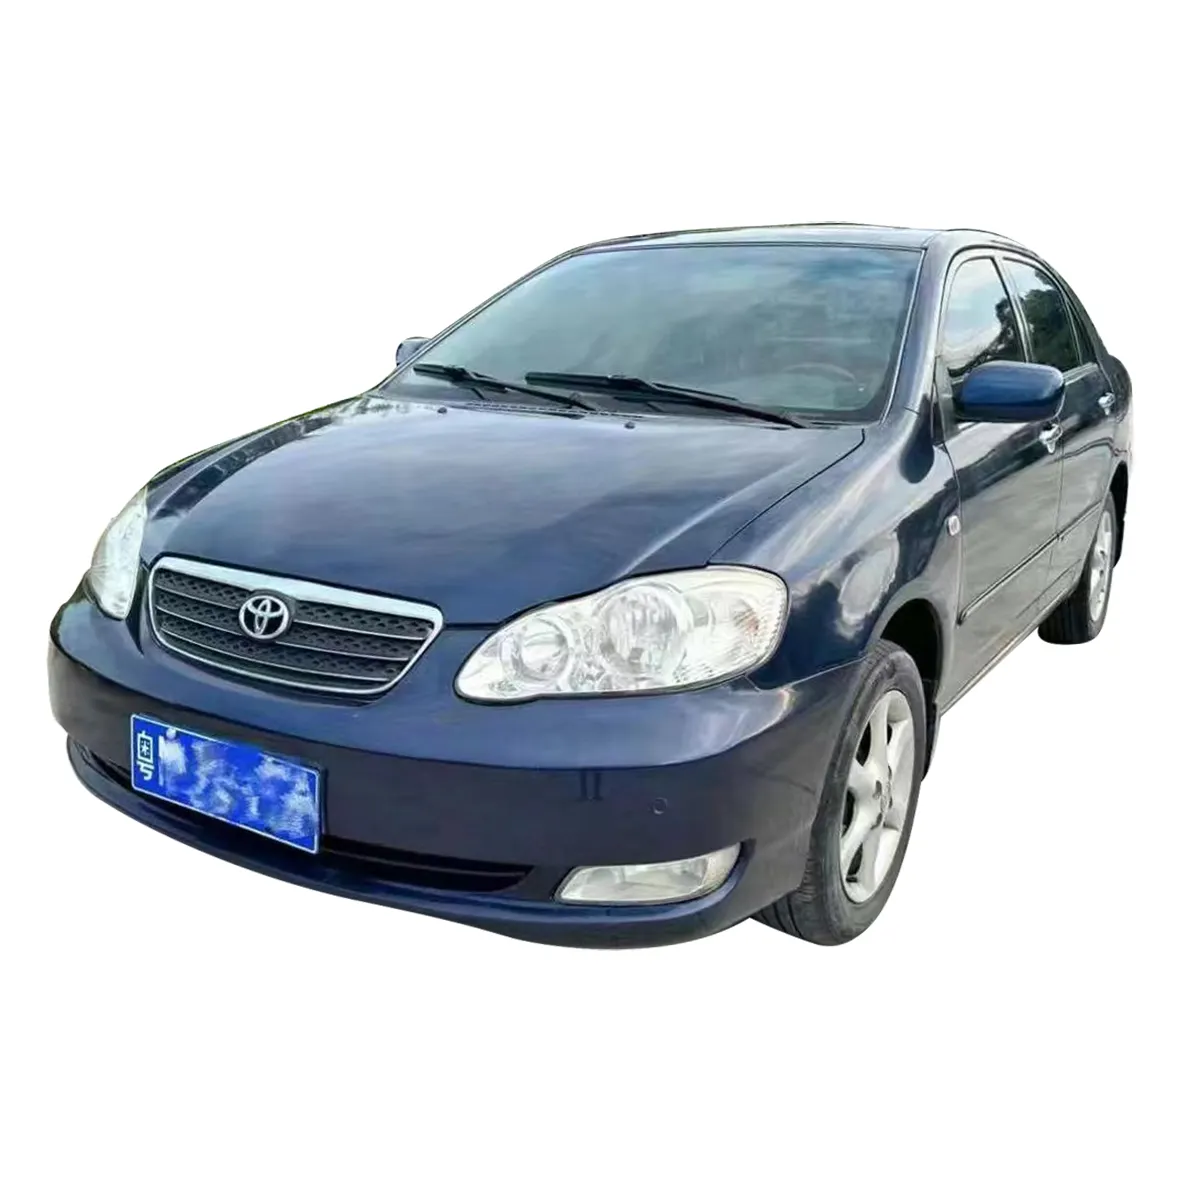 Giá Tốt Nhất 2004 Toyota Corolla 1.8L Sử Dụng Xe Ô Tô SUV Thứ Hai Tay Xe Taxi Lái Xe Trường